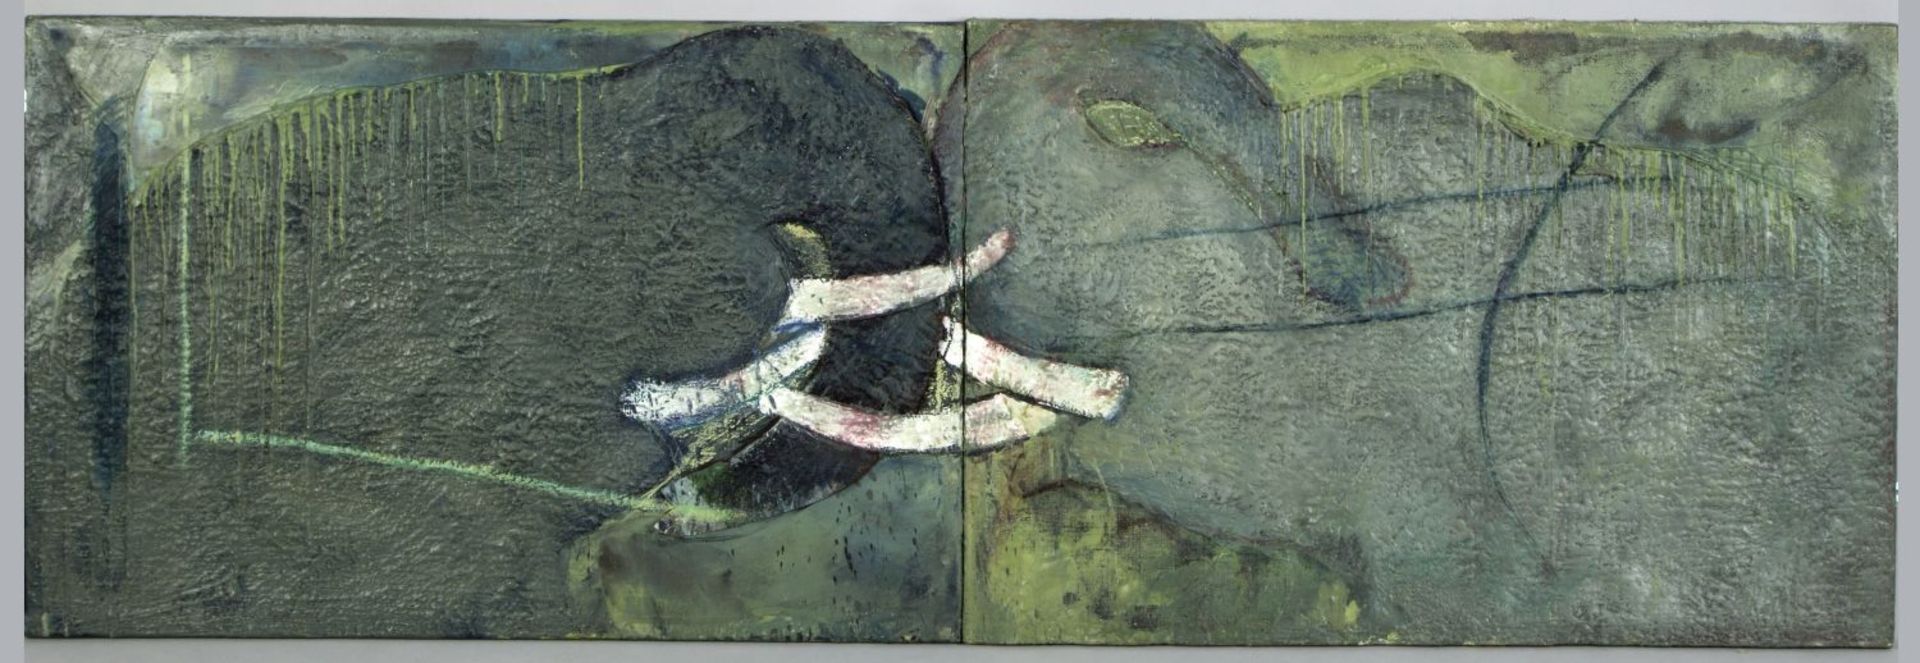 Gauerke, Hinrich. 1950 Hamburg Elefanten. Diptychon Wachs und Öl/Jute. 67 x 200,5 cm. Verso sign., b